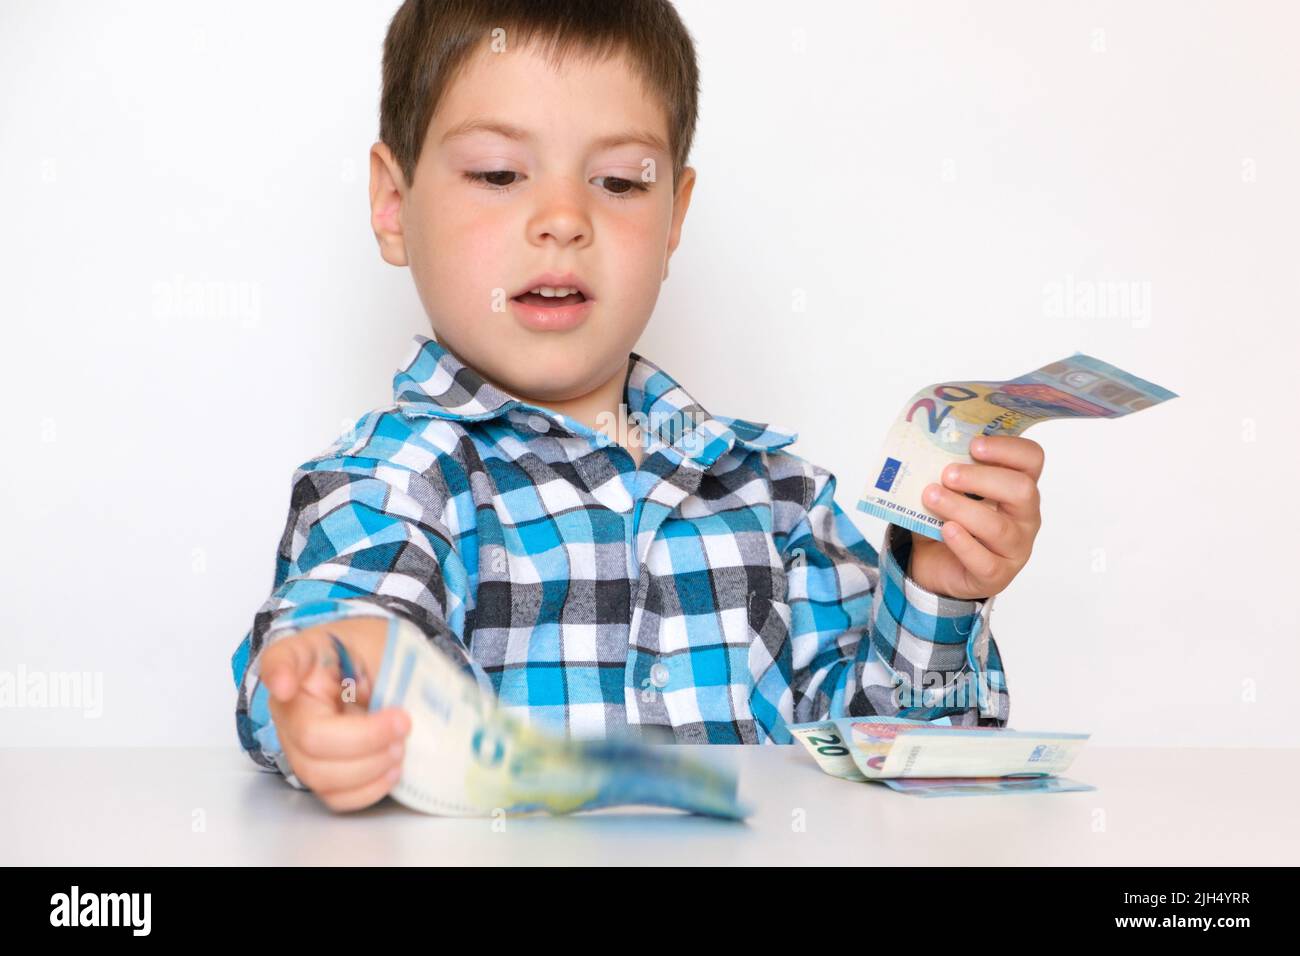 Un garçon de 4 ans compte de l'argent, tient des euros entre ses mains. Enseigner aux enfants la littératie financière, de l'argent de poche. Banque D'Images